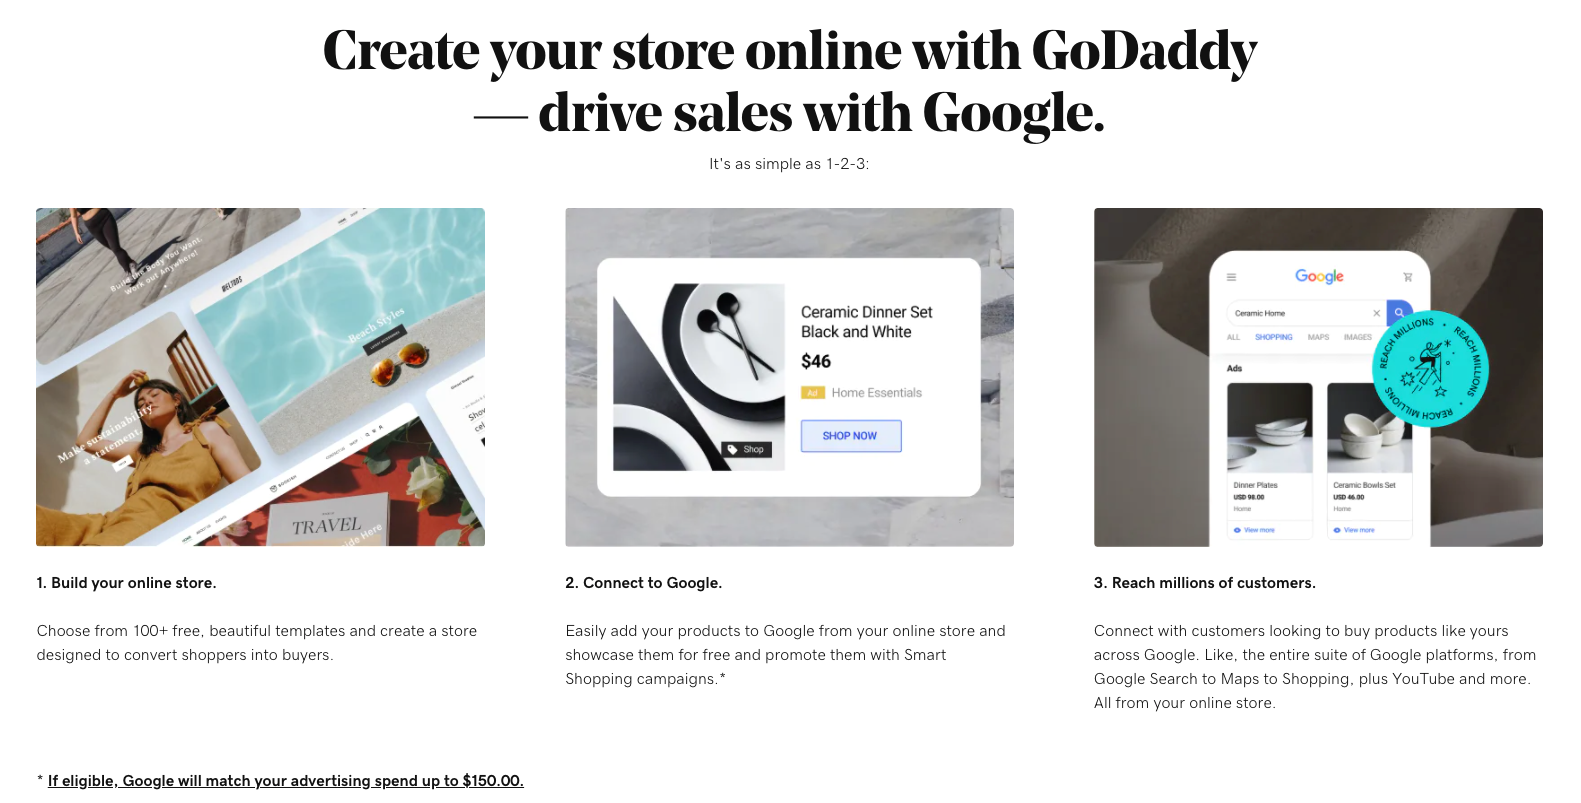 Una captura de pantalla de la pantalla de marketing que muestra los beneficios y la facilidad de conectarse a Google Shopping